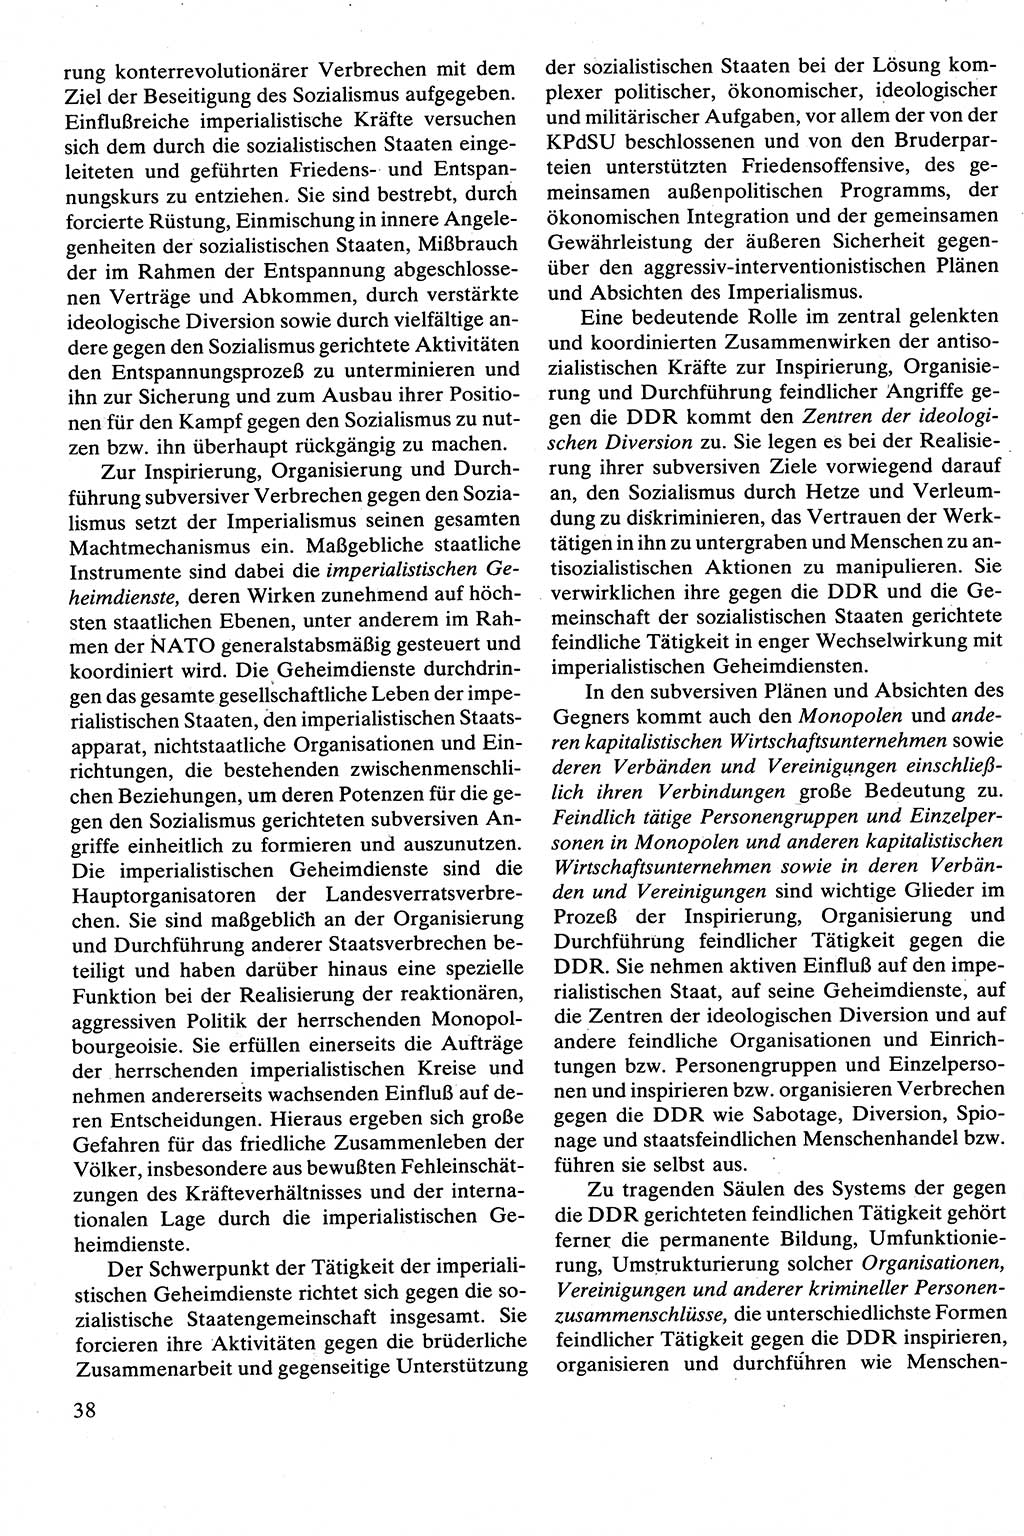 Strafrecht [Deutsche Demokratische Republik (DDR)], Besonderer Teil, Lehrbuch 1981, Seite 38 (Strafr. DDR BT Lb. 1981, S. 38)